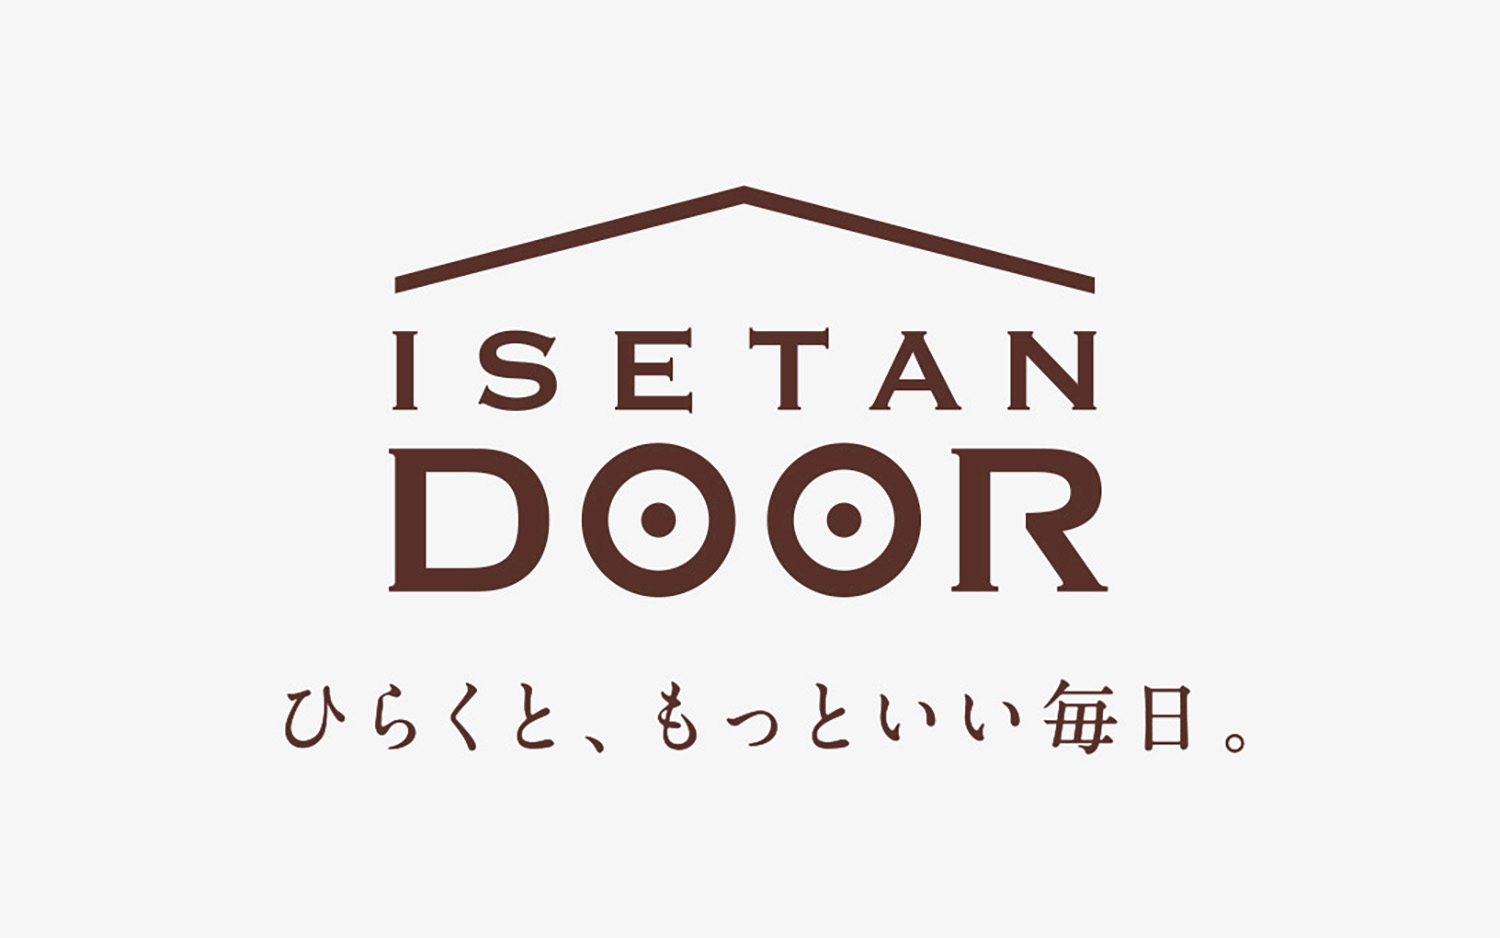 ネーミングとタグラインを担当した三越伊勢丹のEC宅配サービス「ISETAN DOOR」。「ひらく」には、ウェブサイトを開く、玄関のドアを開く、宅配ボックスを開く、などサービスにまつわるさまざまなイメージをかけている（© ISETAN MITSUKOSHI HOLDINGS）